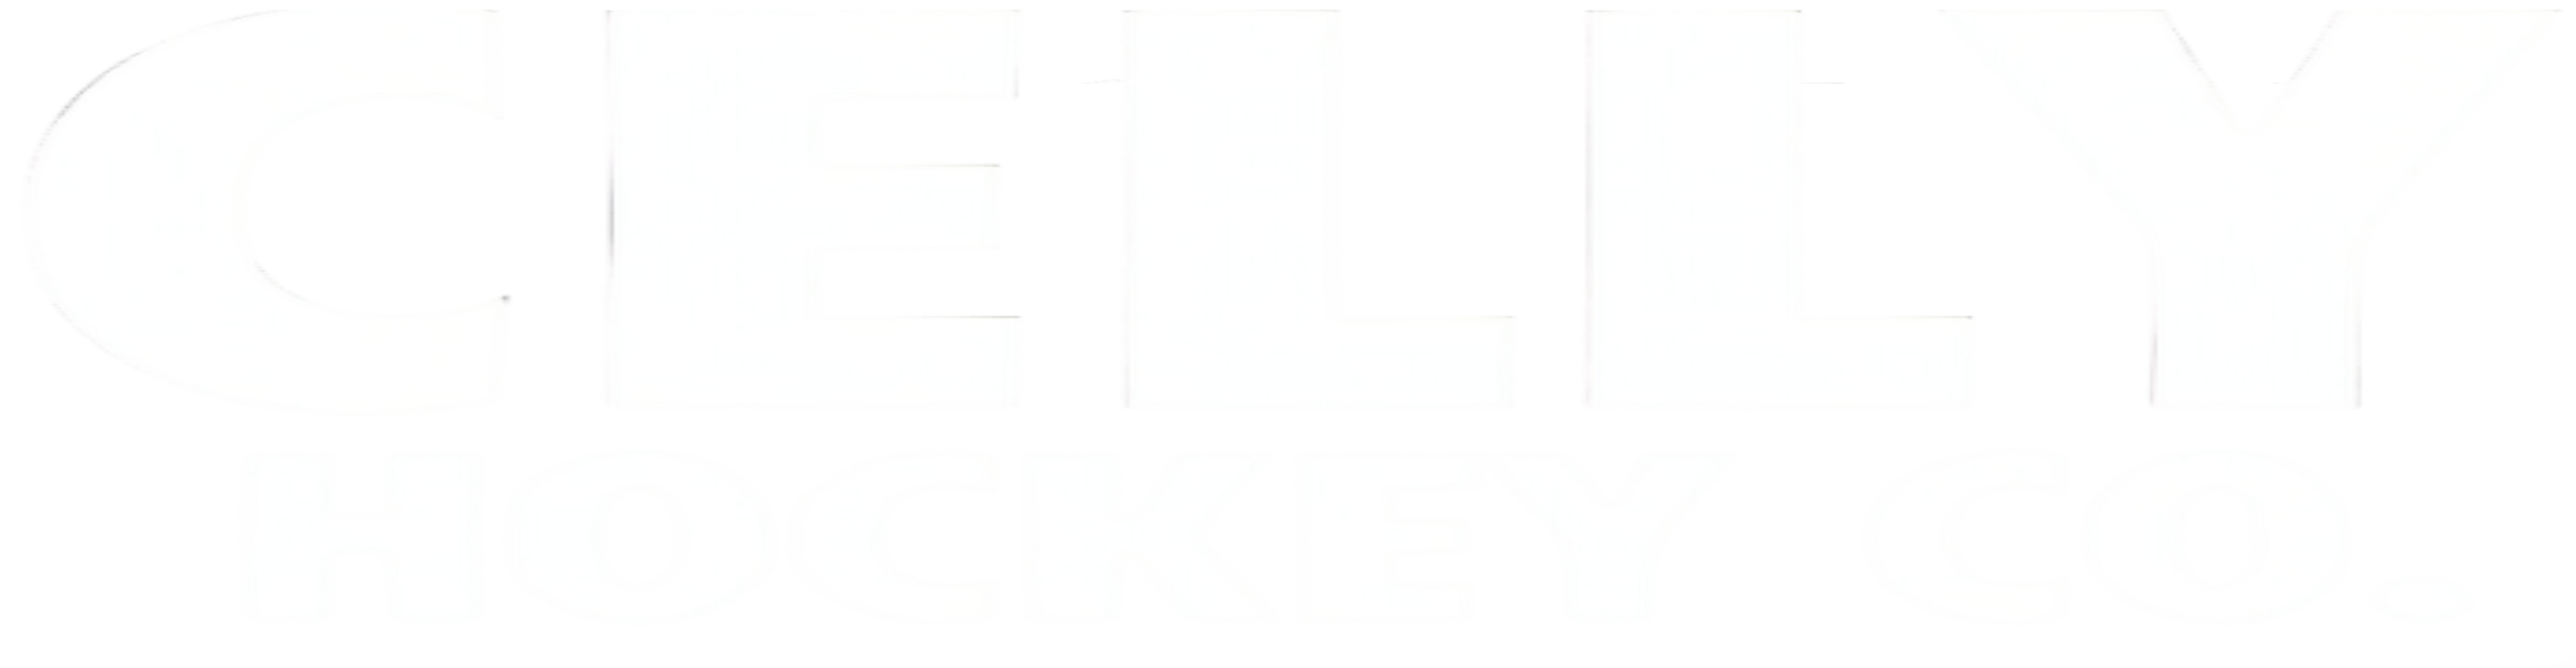 Celly Hockey Co